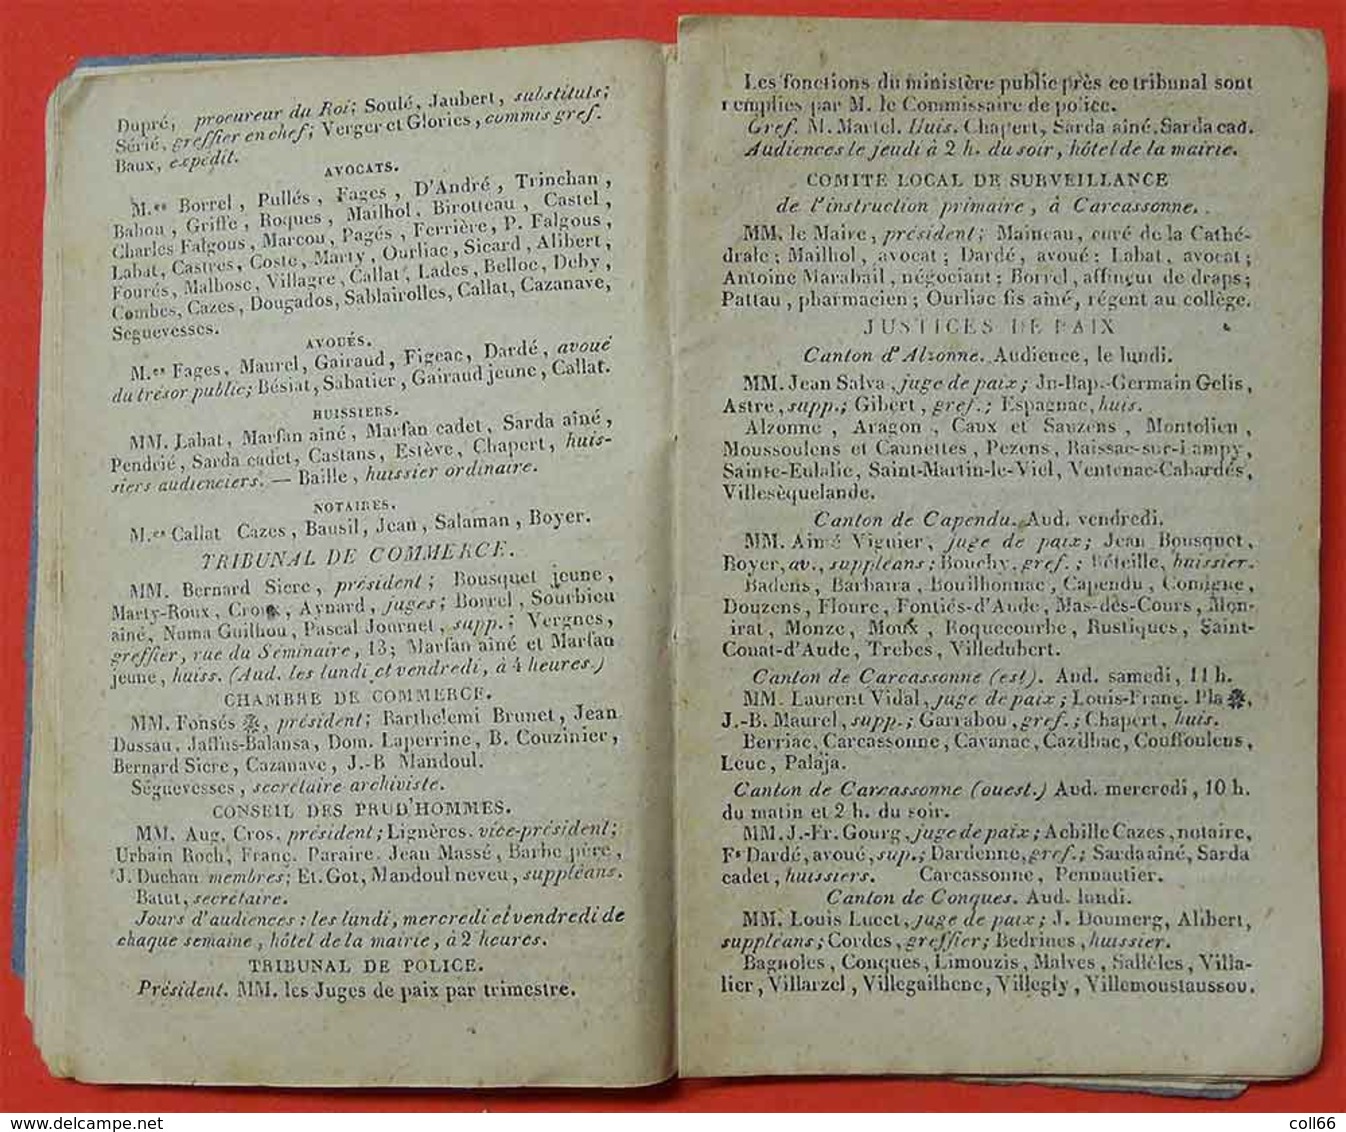 1847 Almanach curieux et récréatif Noms Fonctions  Aude dates Foires du 09-11-31-34-66-81édit Pierre Polere Carcassonne